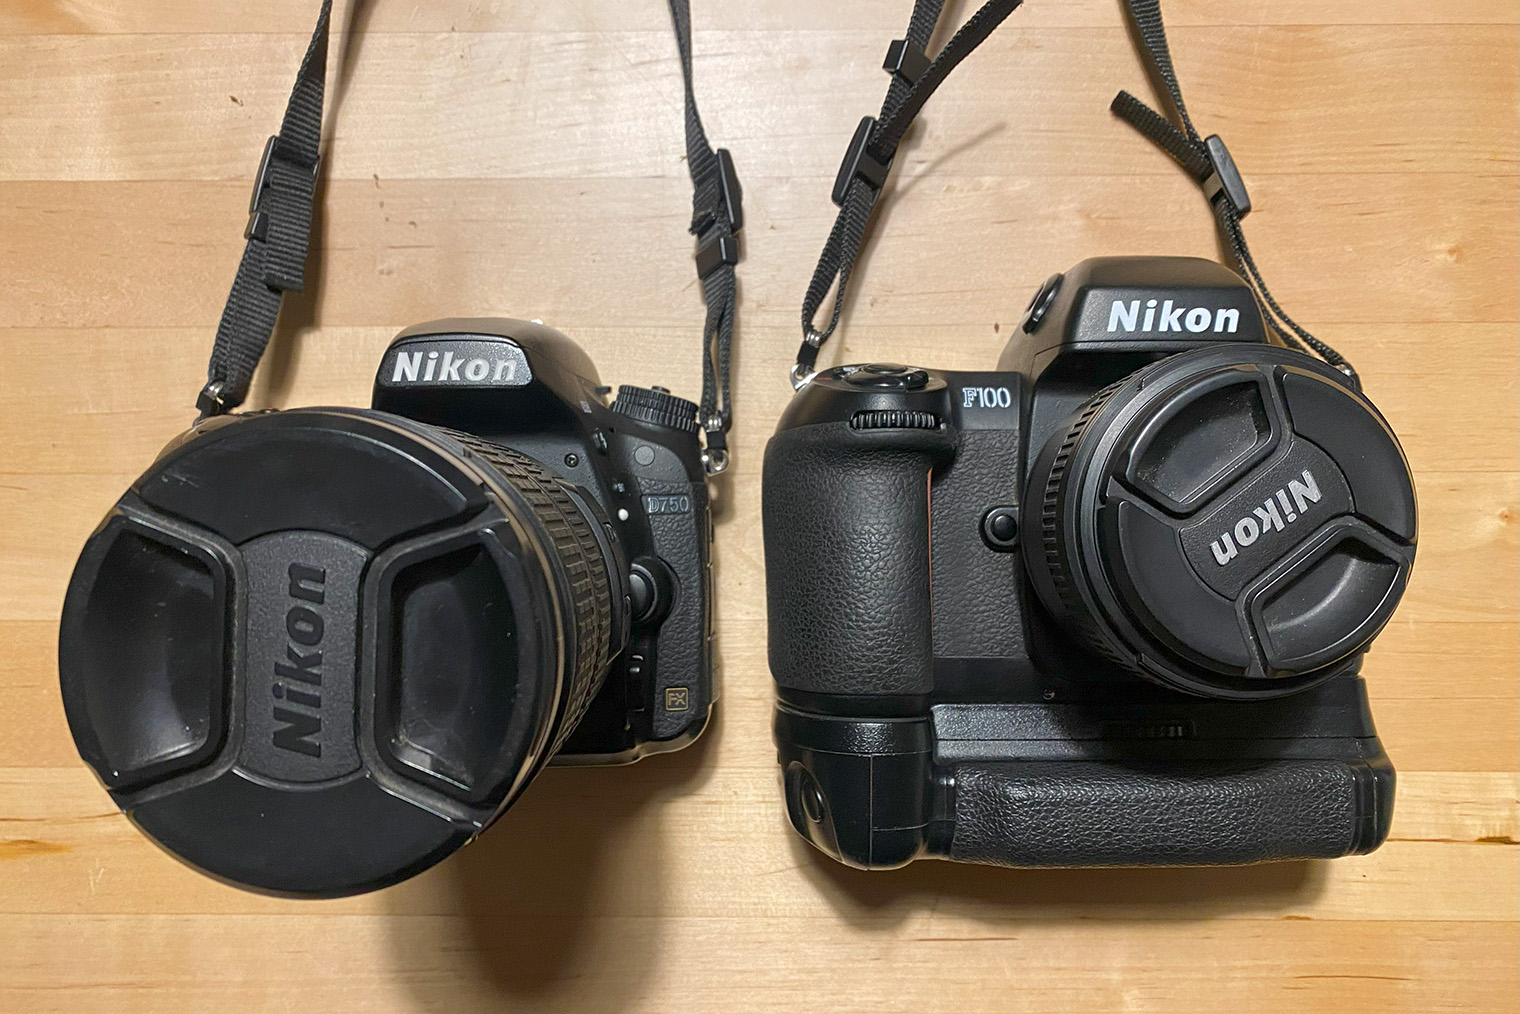 Две мои камеры: пленочная F100 и цифровая D750. Размер сенсора и байонет — крепление для объектива — у них одинаковые. Поэтому оптику между ними я меняю без всяких переходников